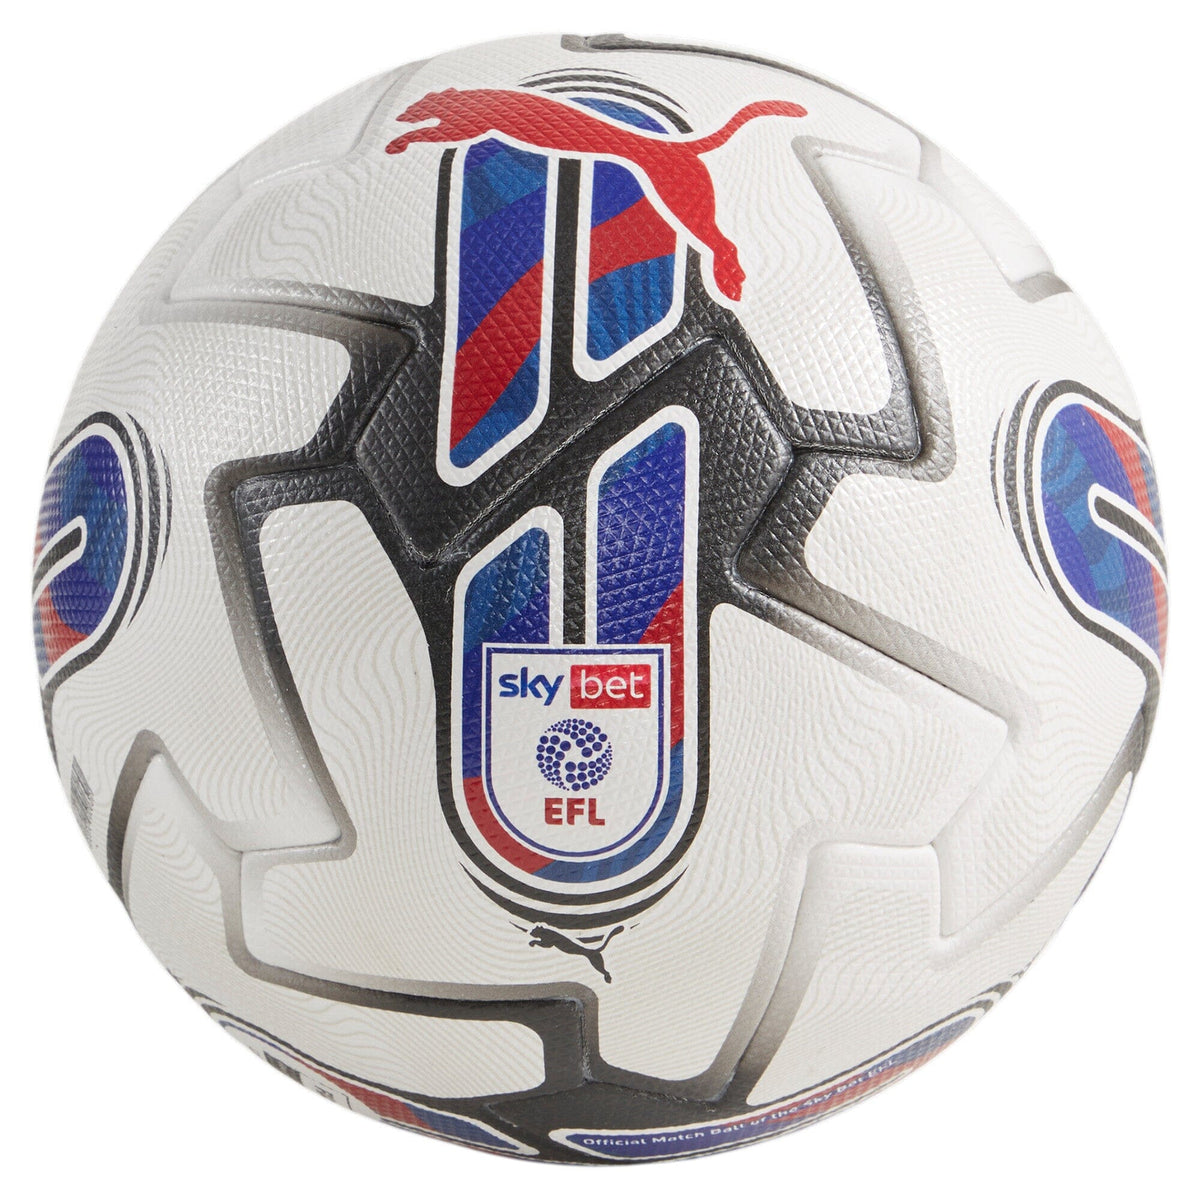 Puma Orbita 1 EFL Sky Bet (FIFA Quality Pro) Match Ball | 08412101 Soccer Balls Puma 5 White 